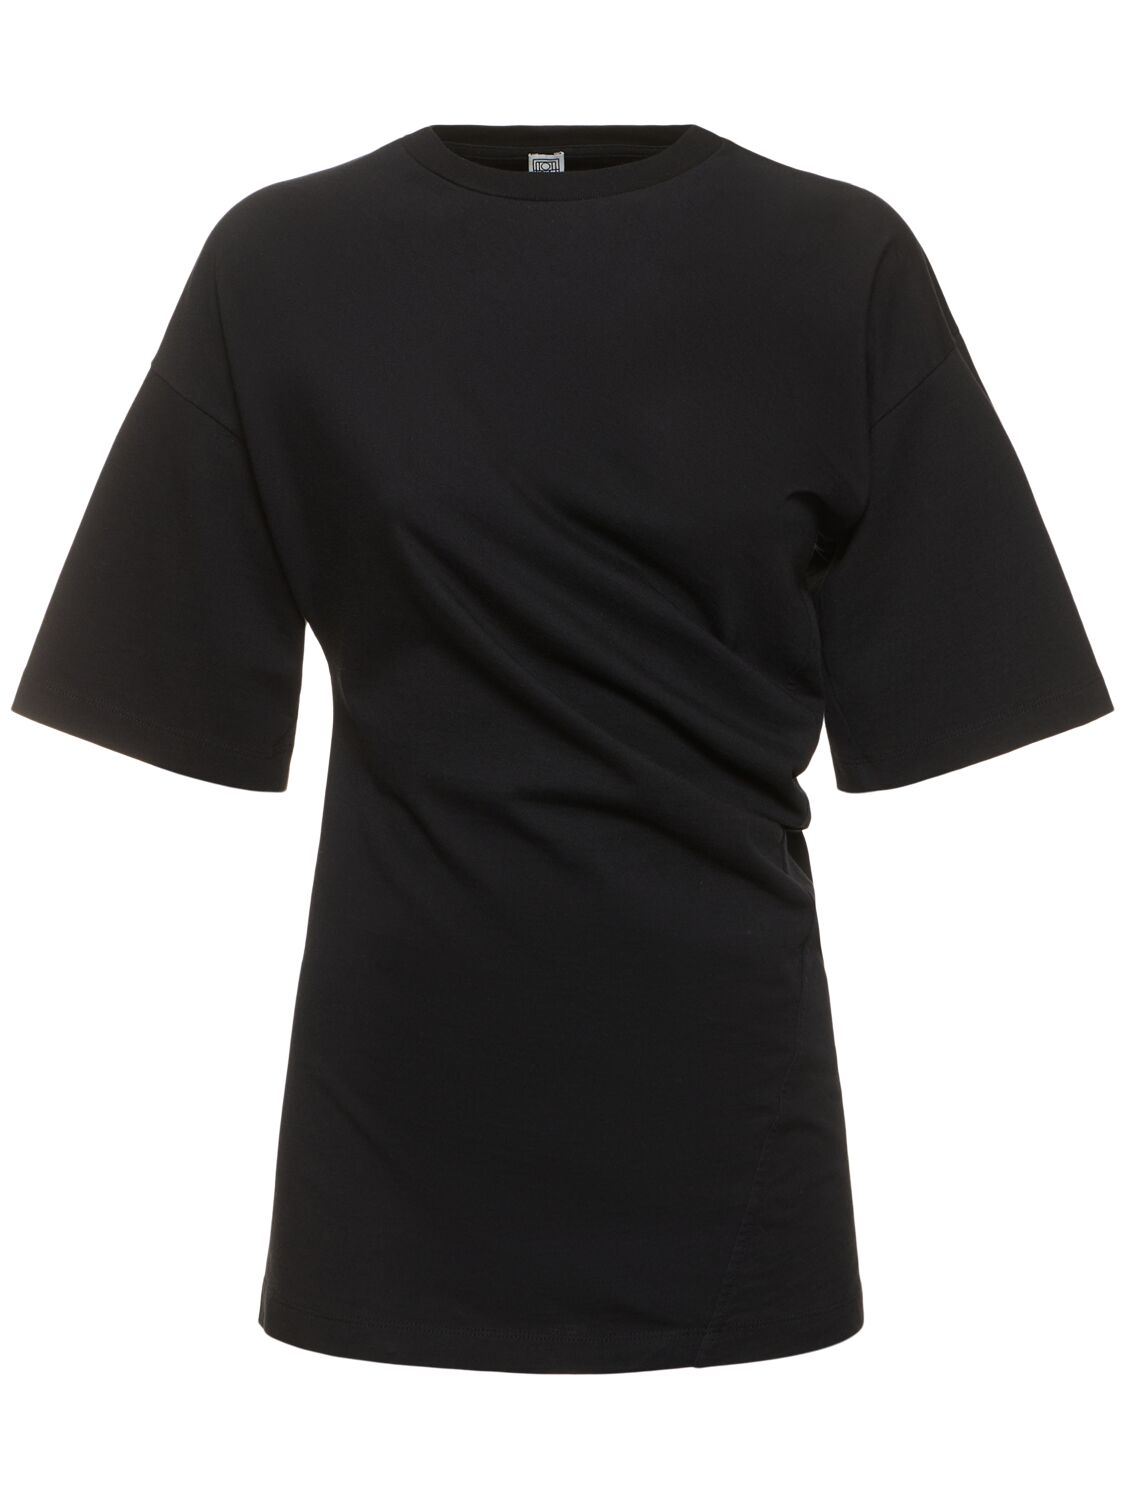 Totême Women's Twisted Cotton Jersey T-shirt In Black